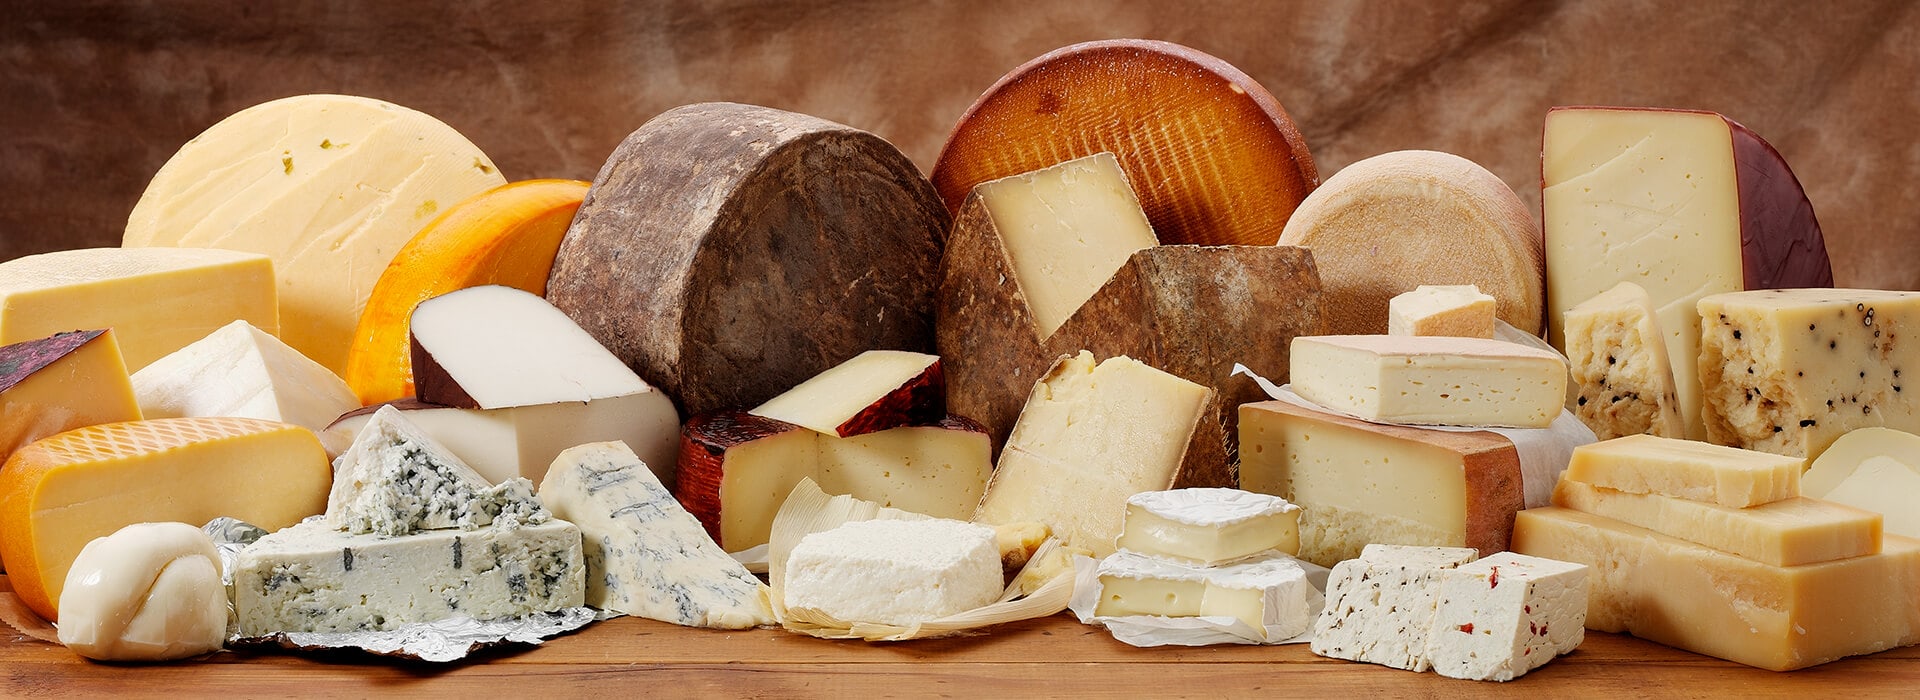 نحوه استفاده از انواع پنیر با توجه به سلامت بدن 